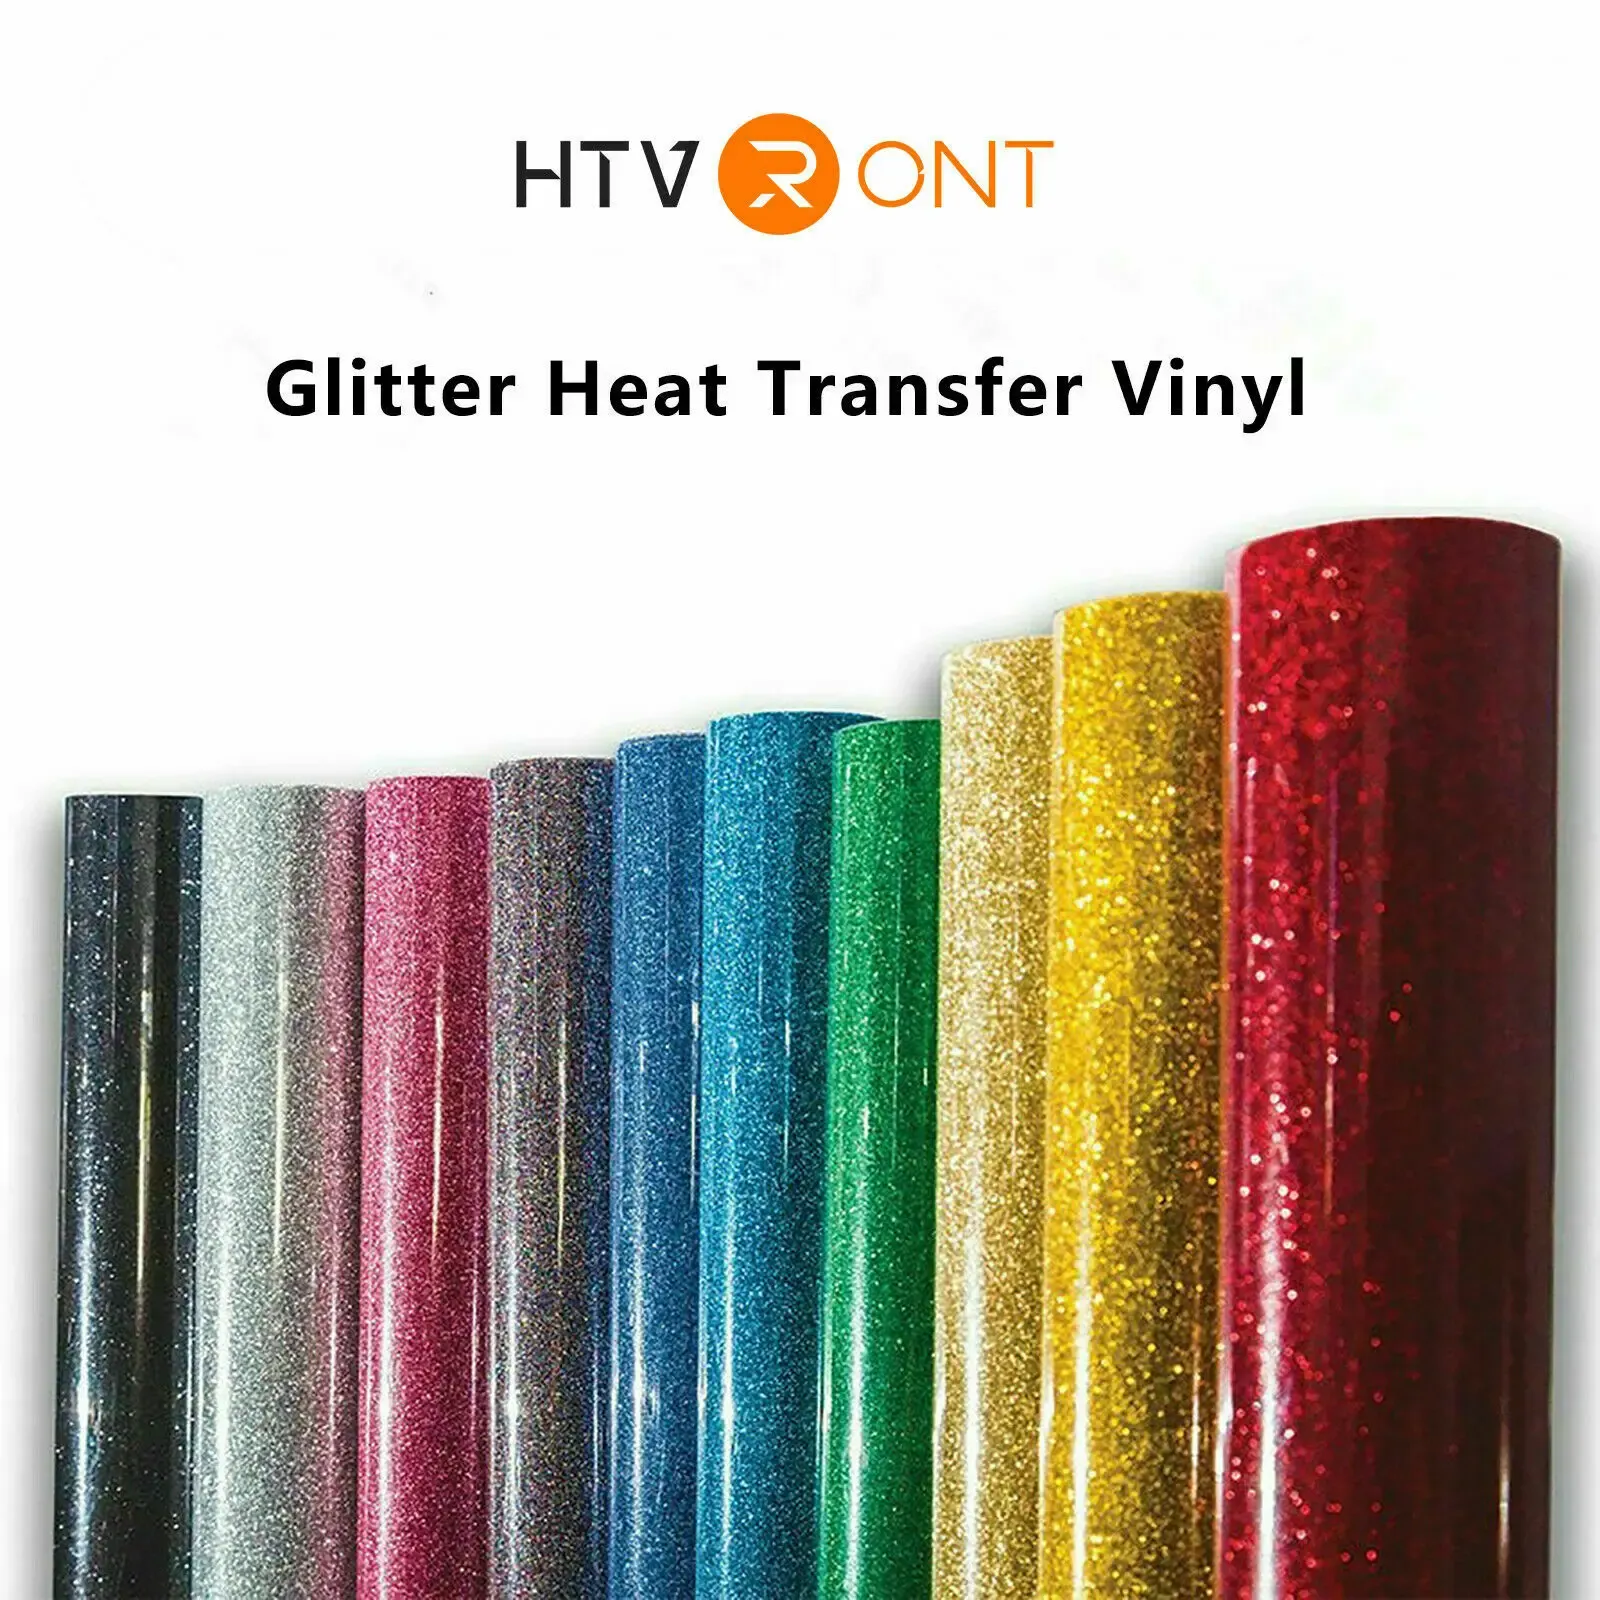 Filmer 10x60inch/25x152cm HTVront värmeöverföring Glitter Vinyl för tshirt DIY Craft Iron on HTV Roll Decor Film Printing Clothing